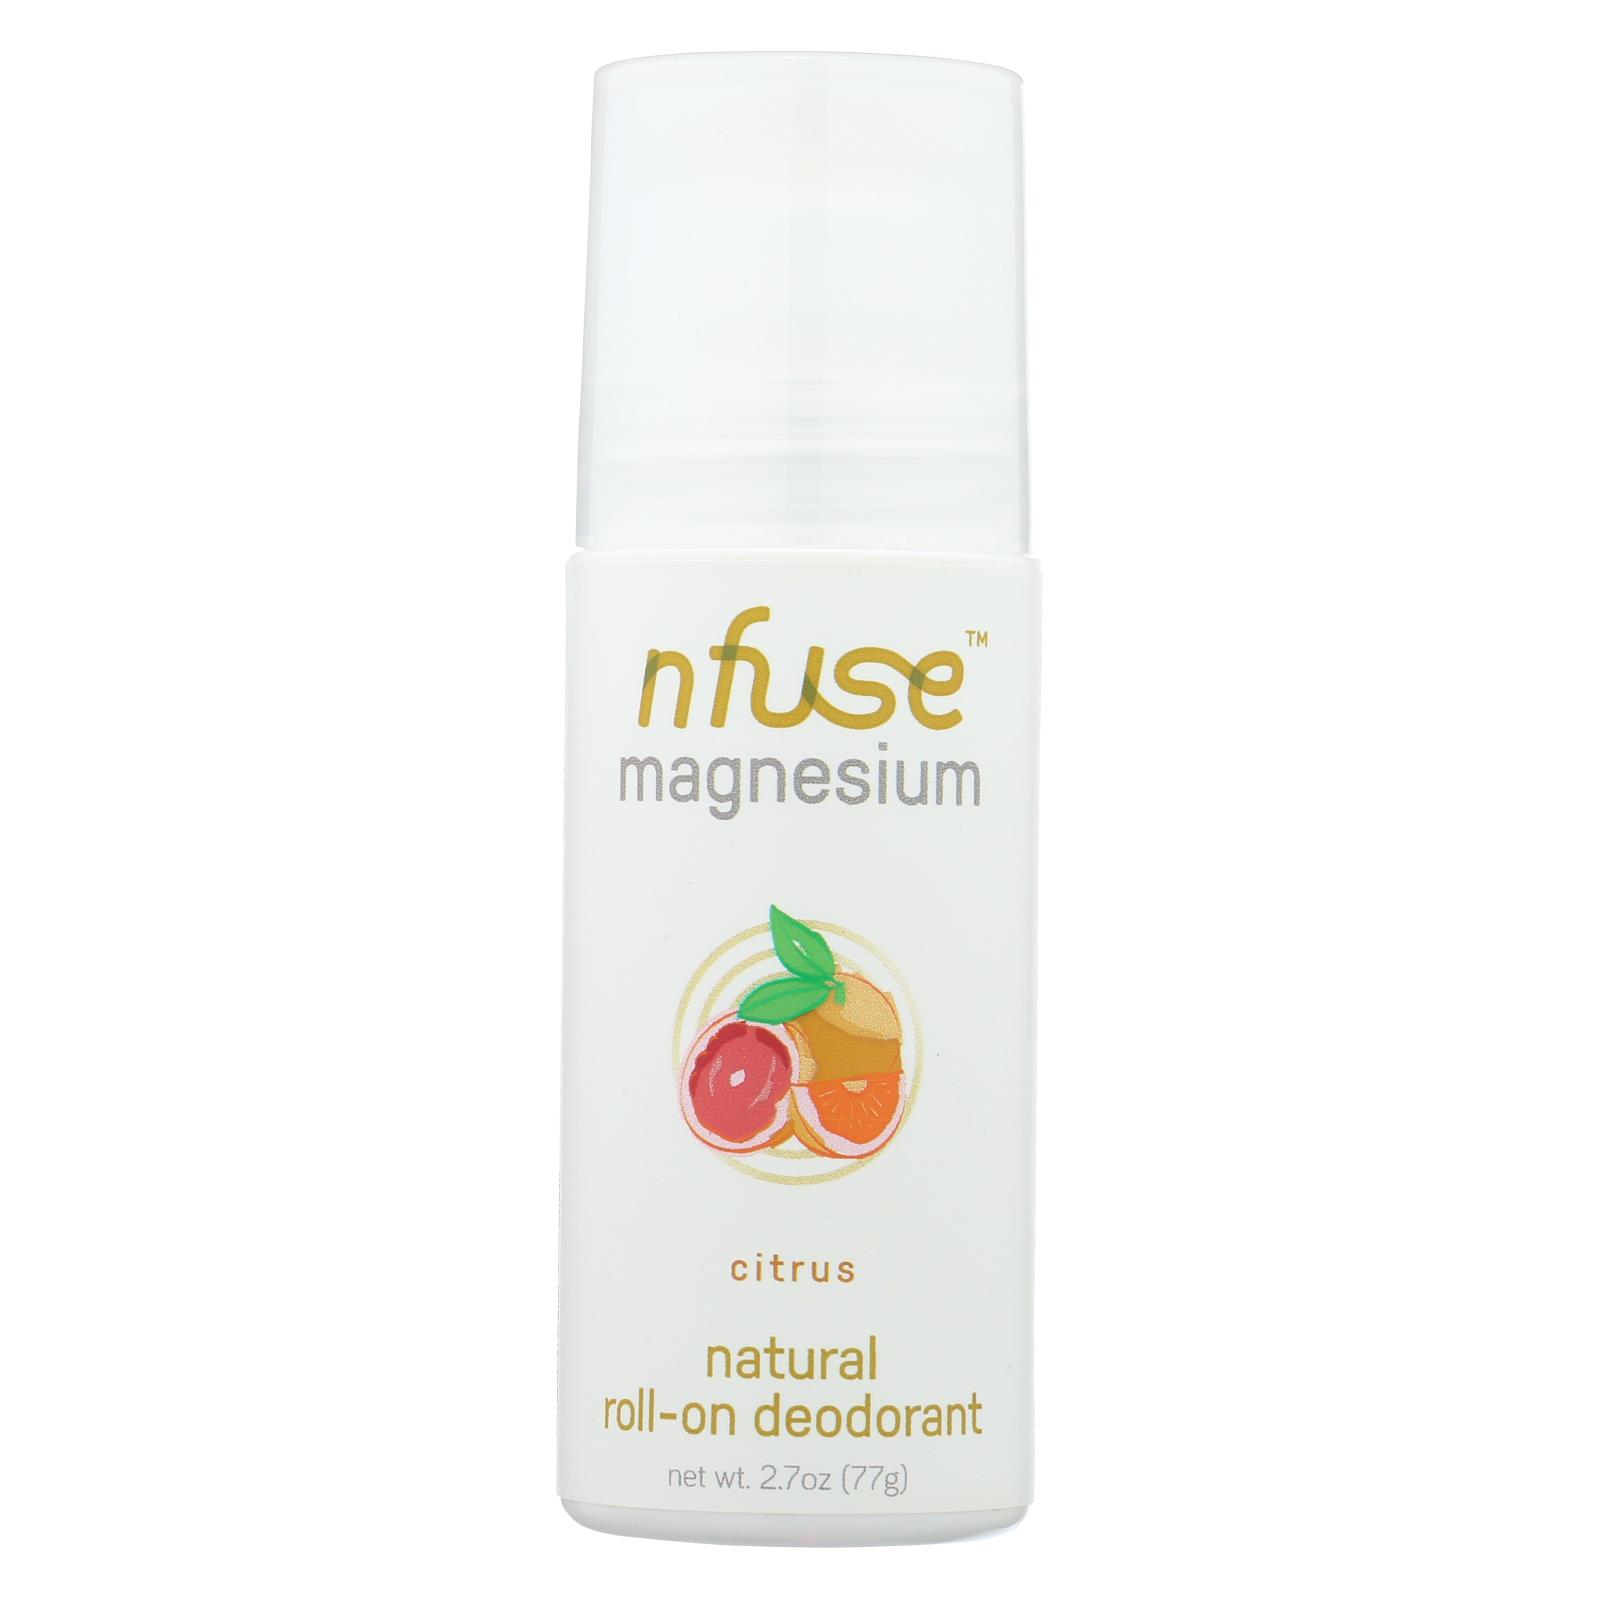 Nfuse - Deodorant Citrus Natural Magnesium - 6개 묶음상품 - 2.7 OZ